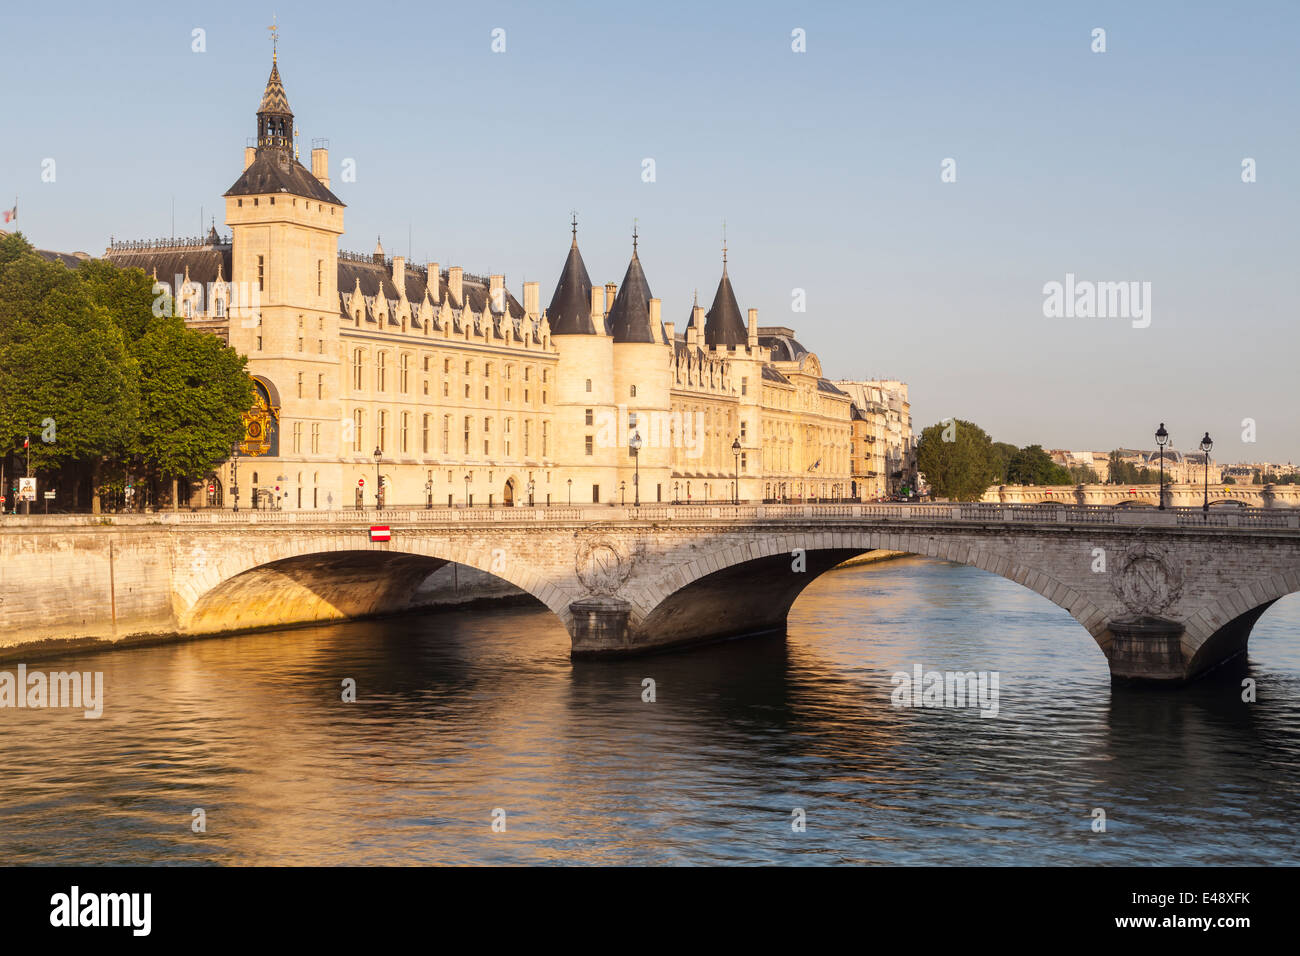 La Conciergerie est un ancien palais royal et de l'administration pénitentiaire à Paris, France. Il est situé sur l'ouest de l'Ile de la Cité. Banque D'Images